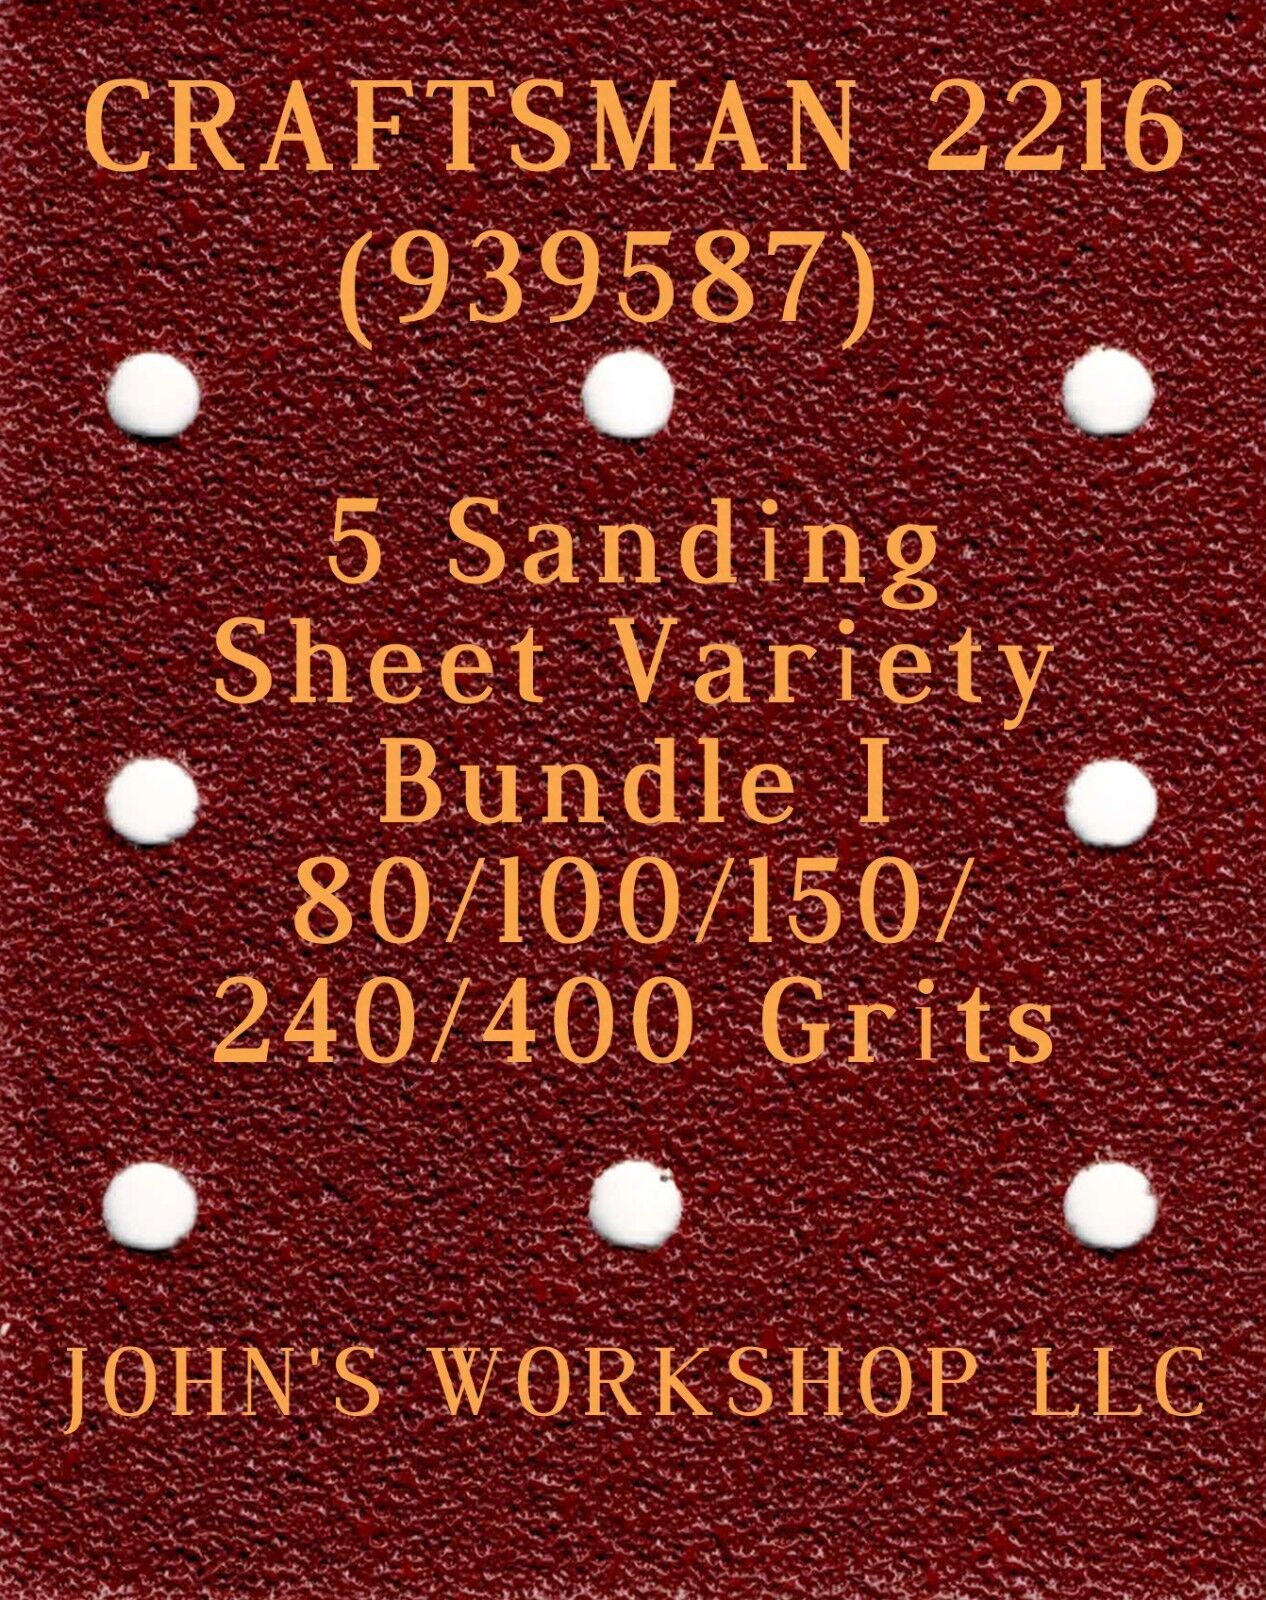 CRAFTSMAN 2216 - 80/100/150/240/400 Grits - 5 Sandpaper Variety Bundle I - $4.99